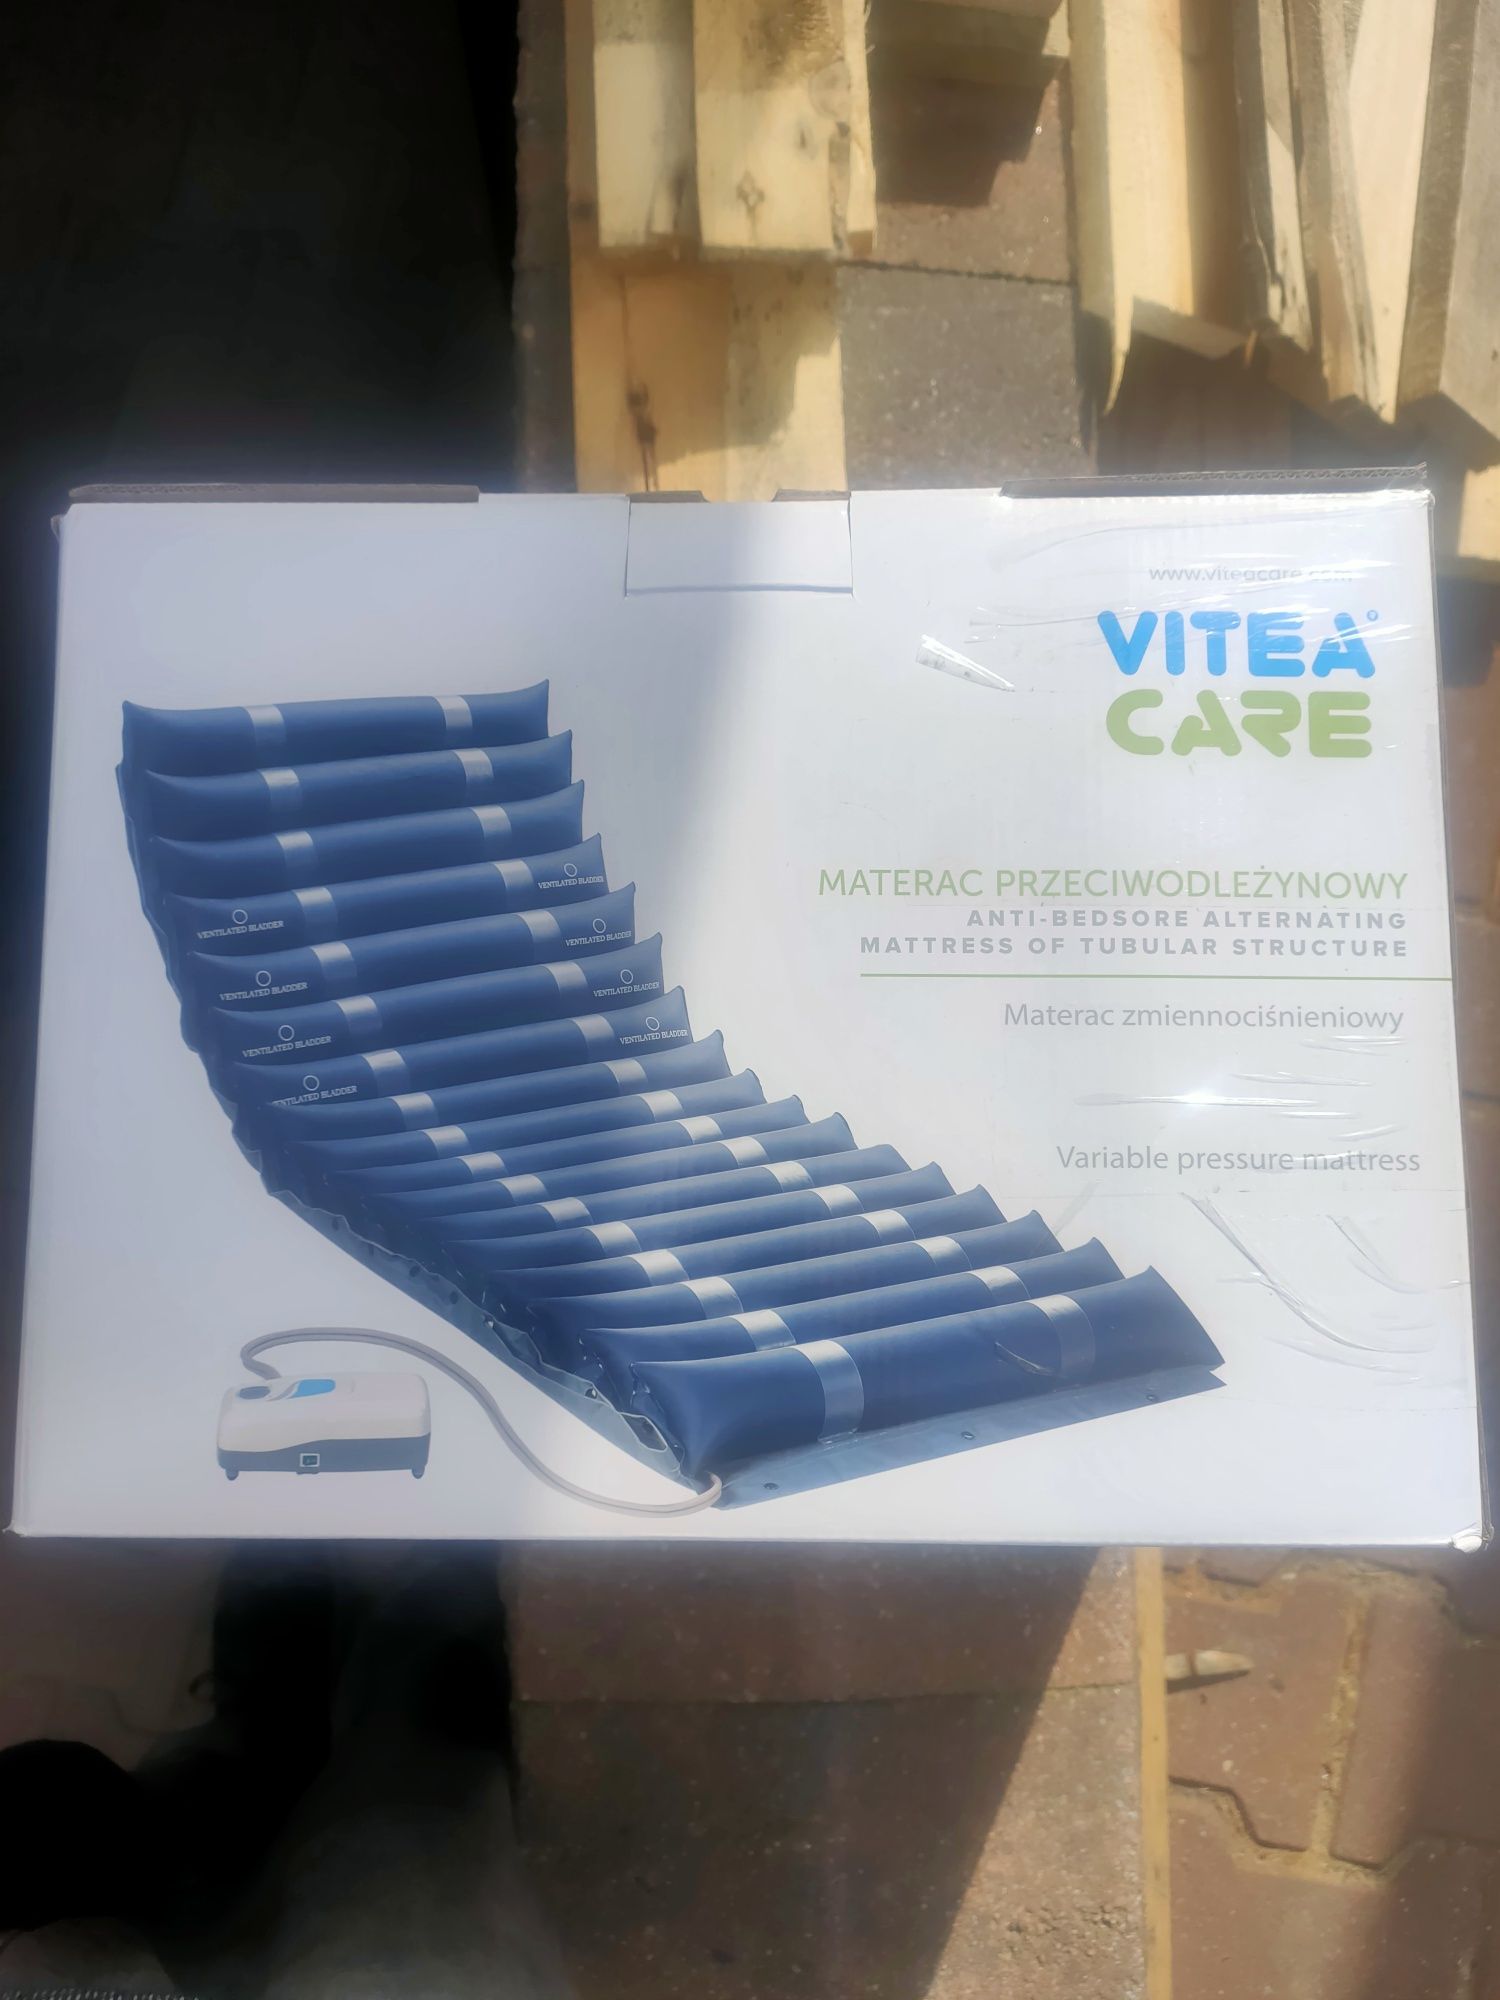 Materac przeciw odleżynowy Vitea Care